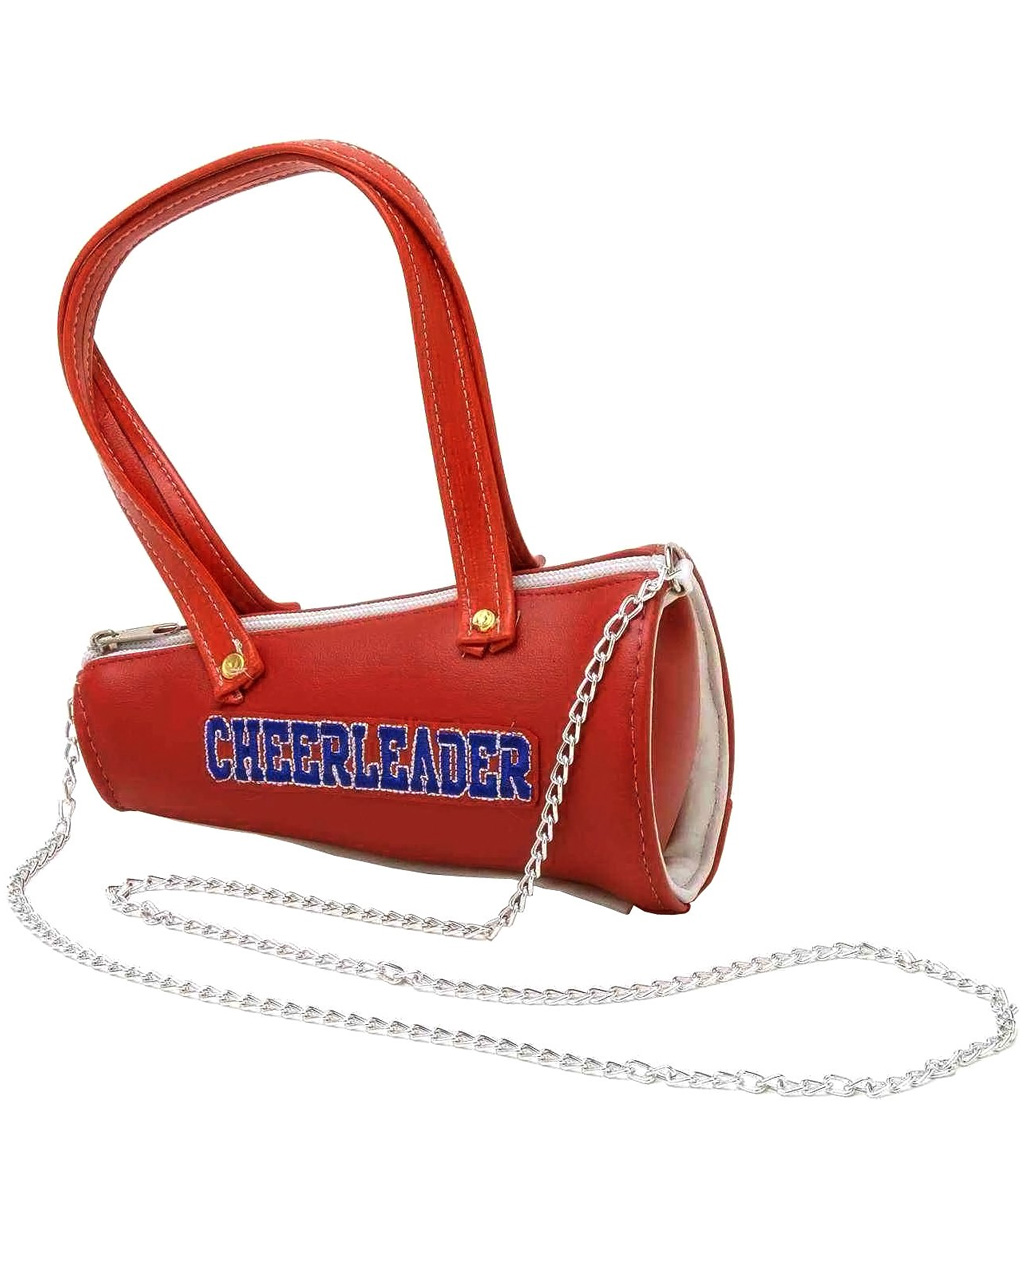 Cheerleader Handbag Buy Online Horror Shop Com